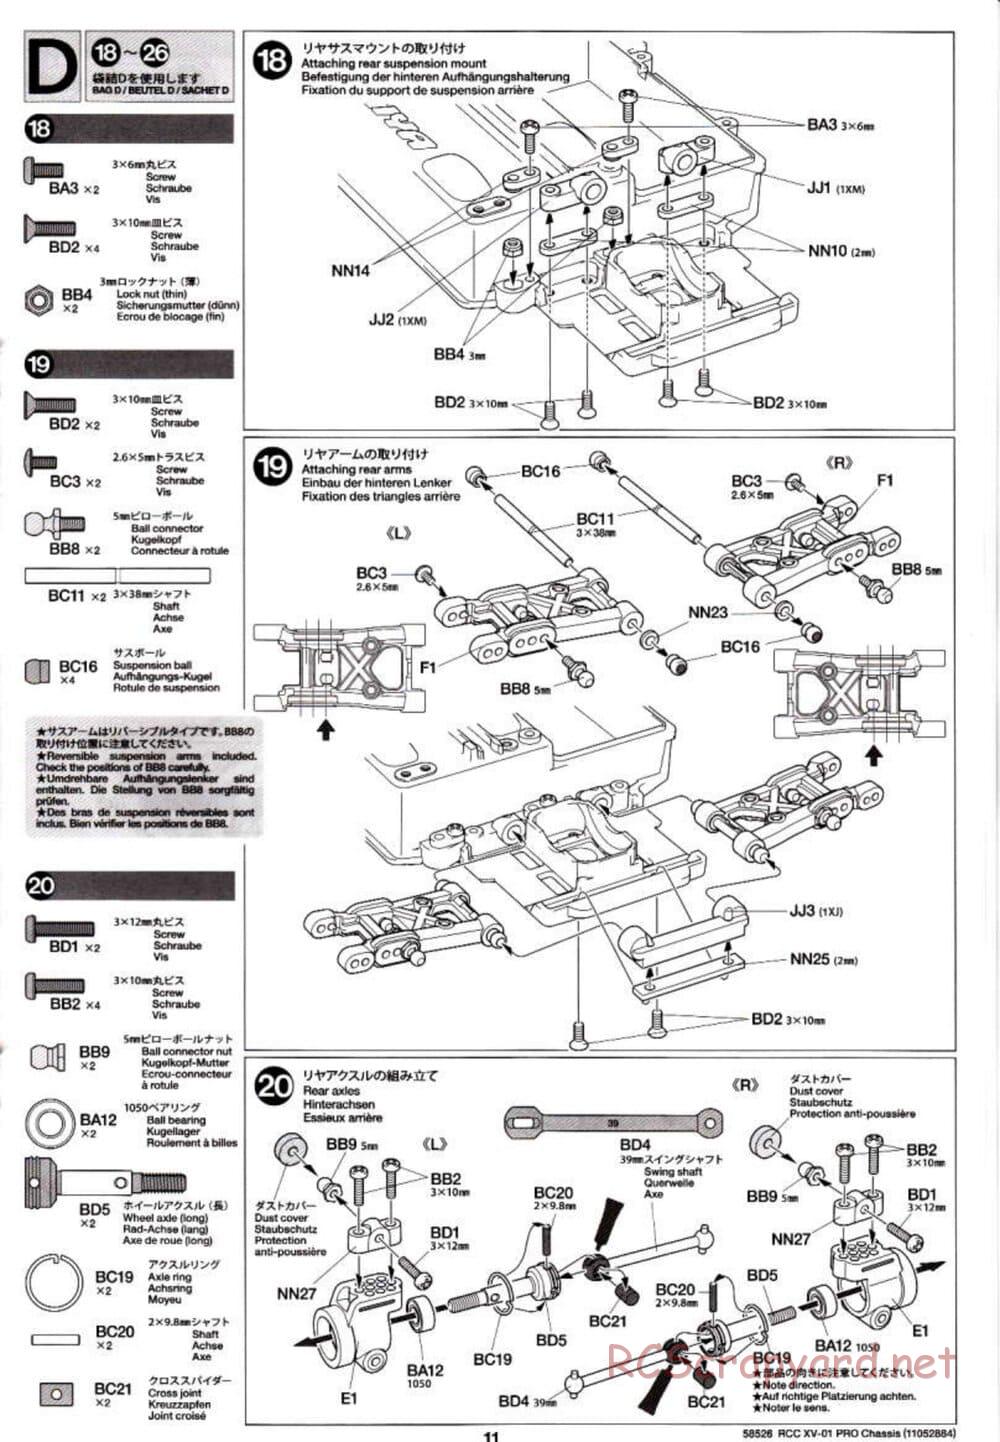 Tamiya - XV-01 PRO Chassis - Manual - Page 11